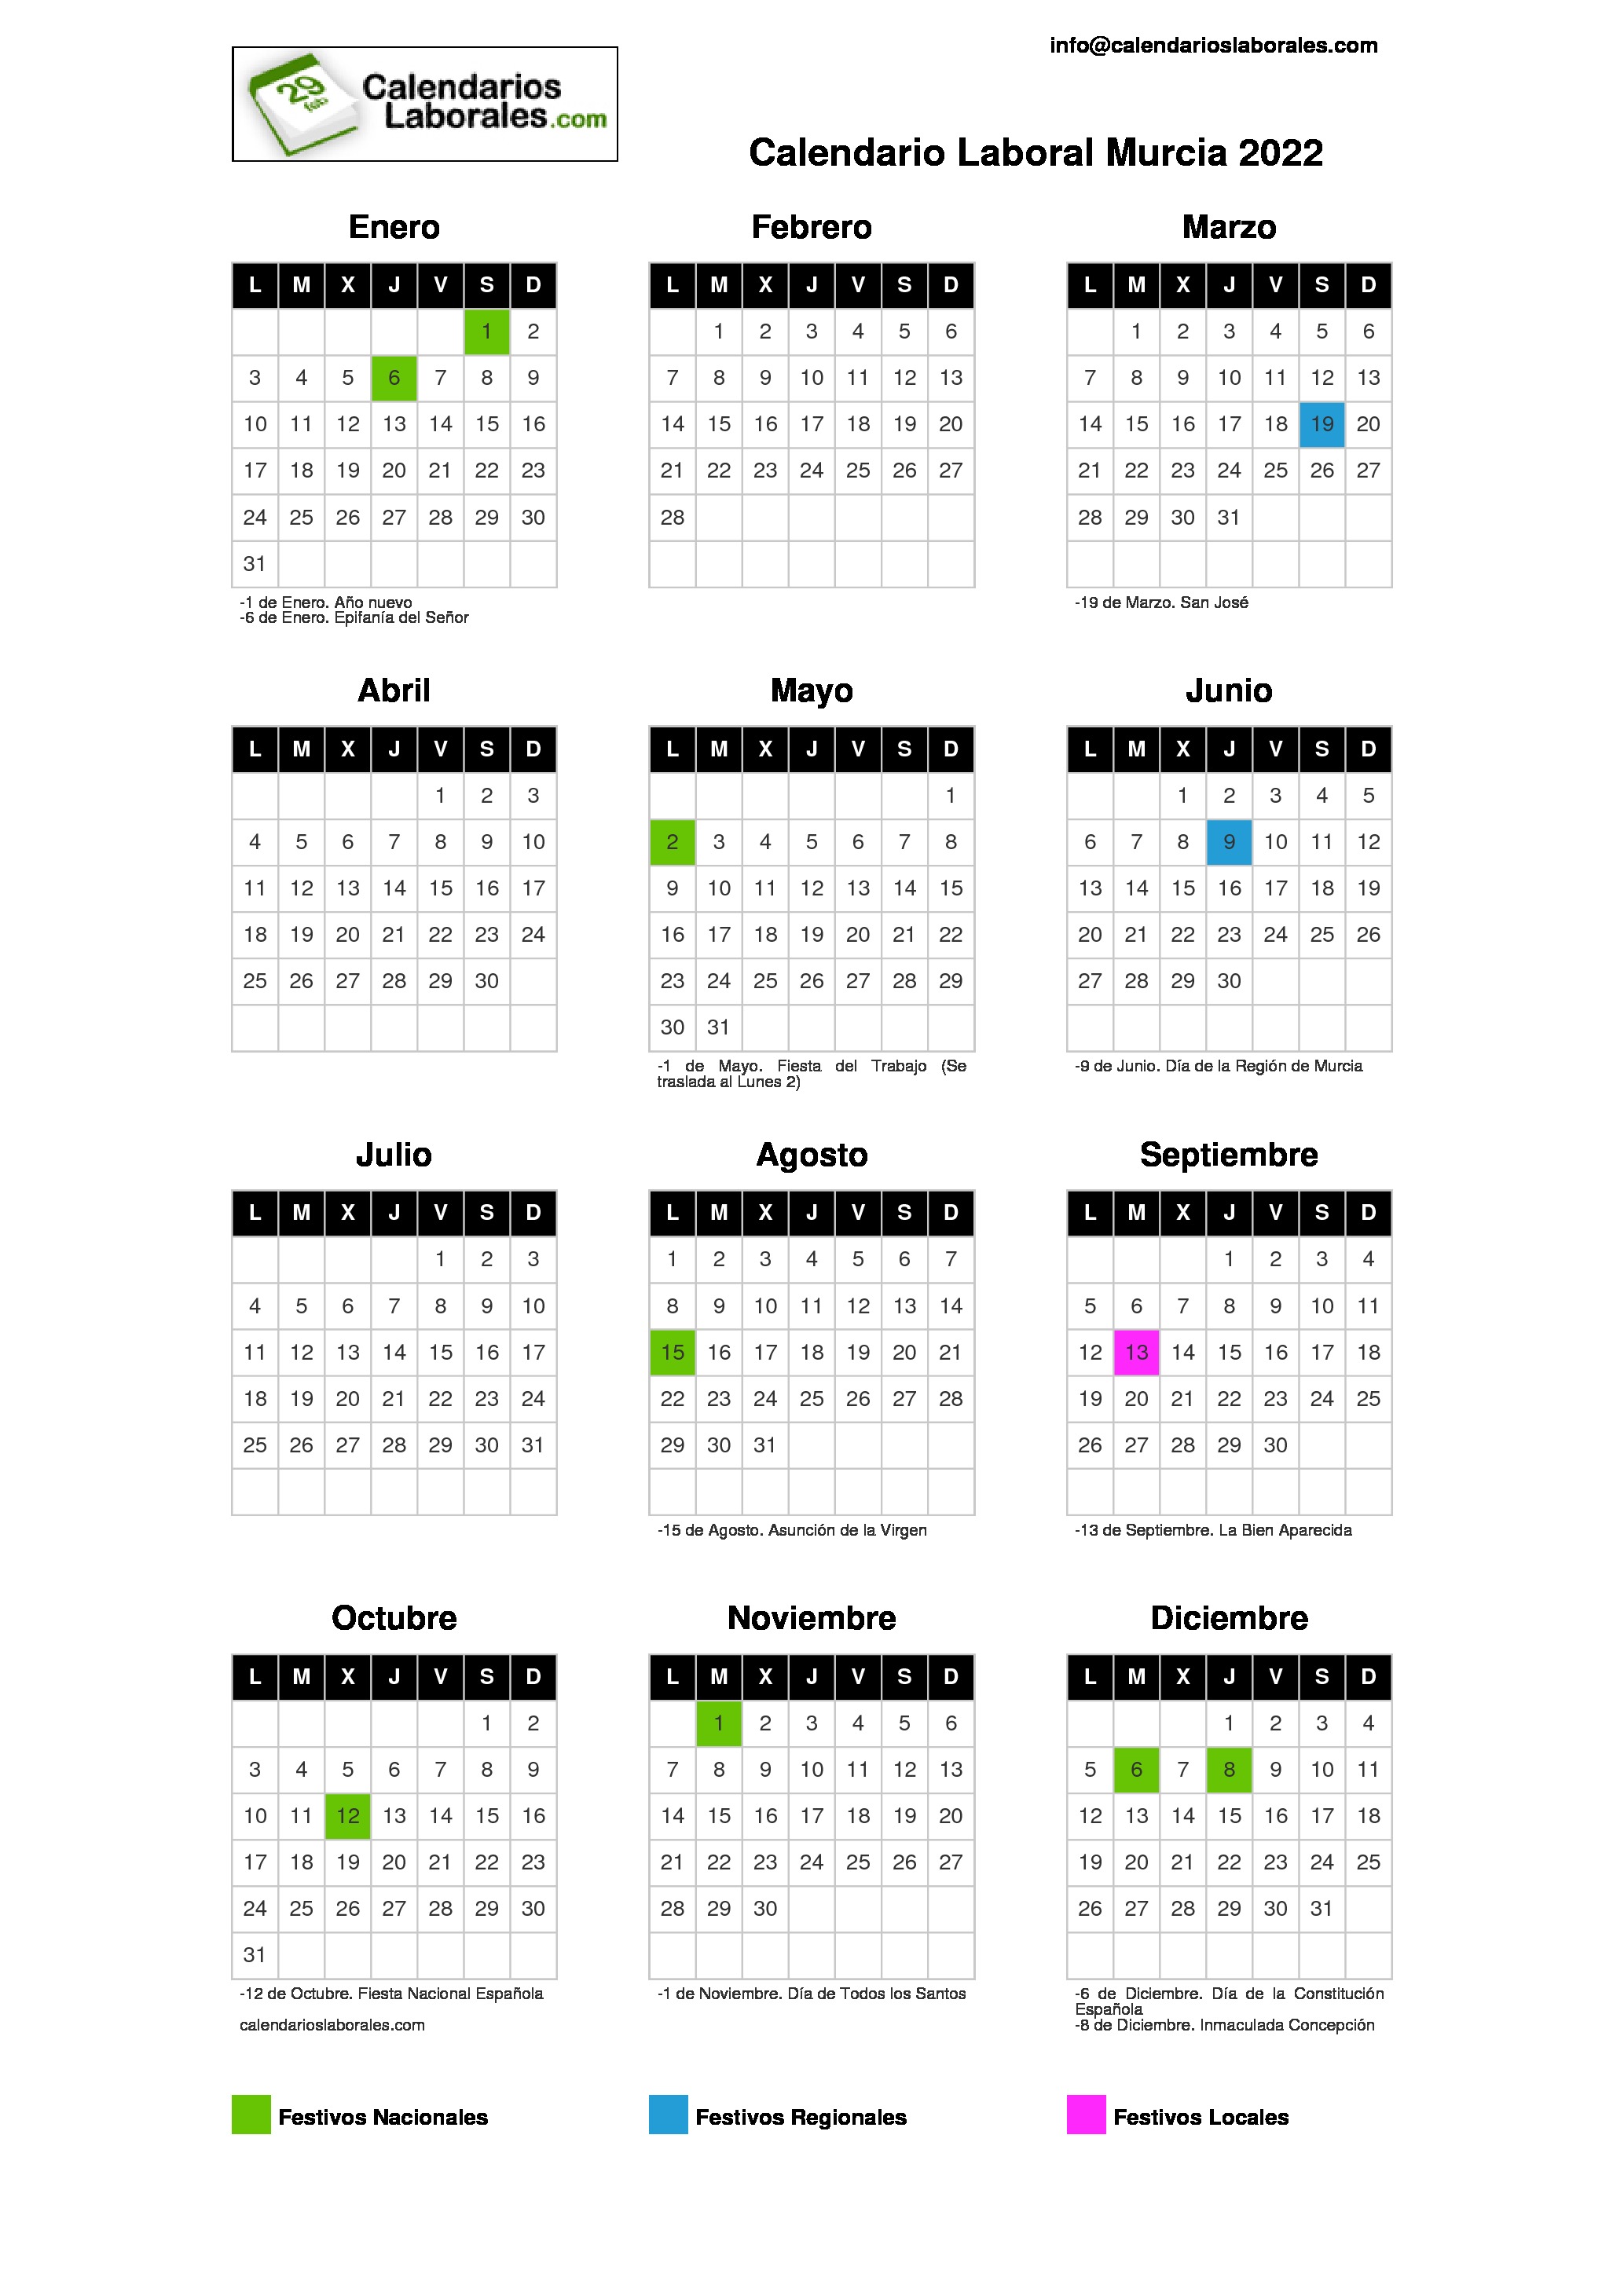 Dias Festivos En Murcia Calendario Laboral Murcia 2022